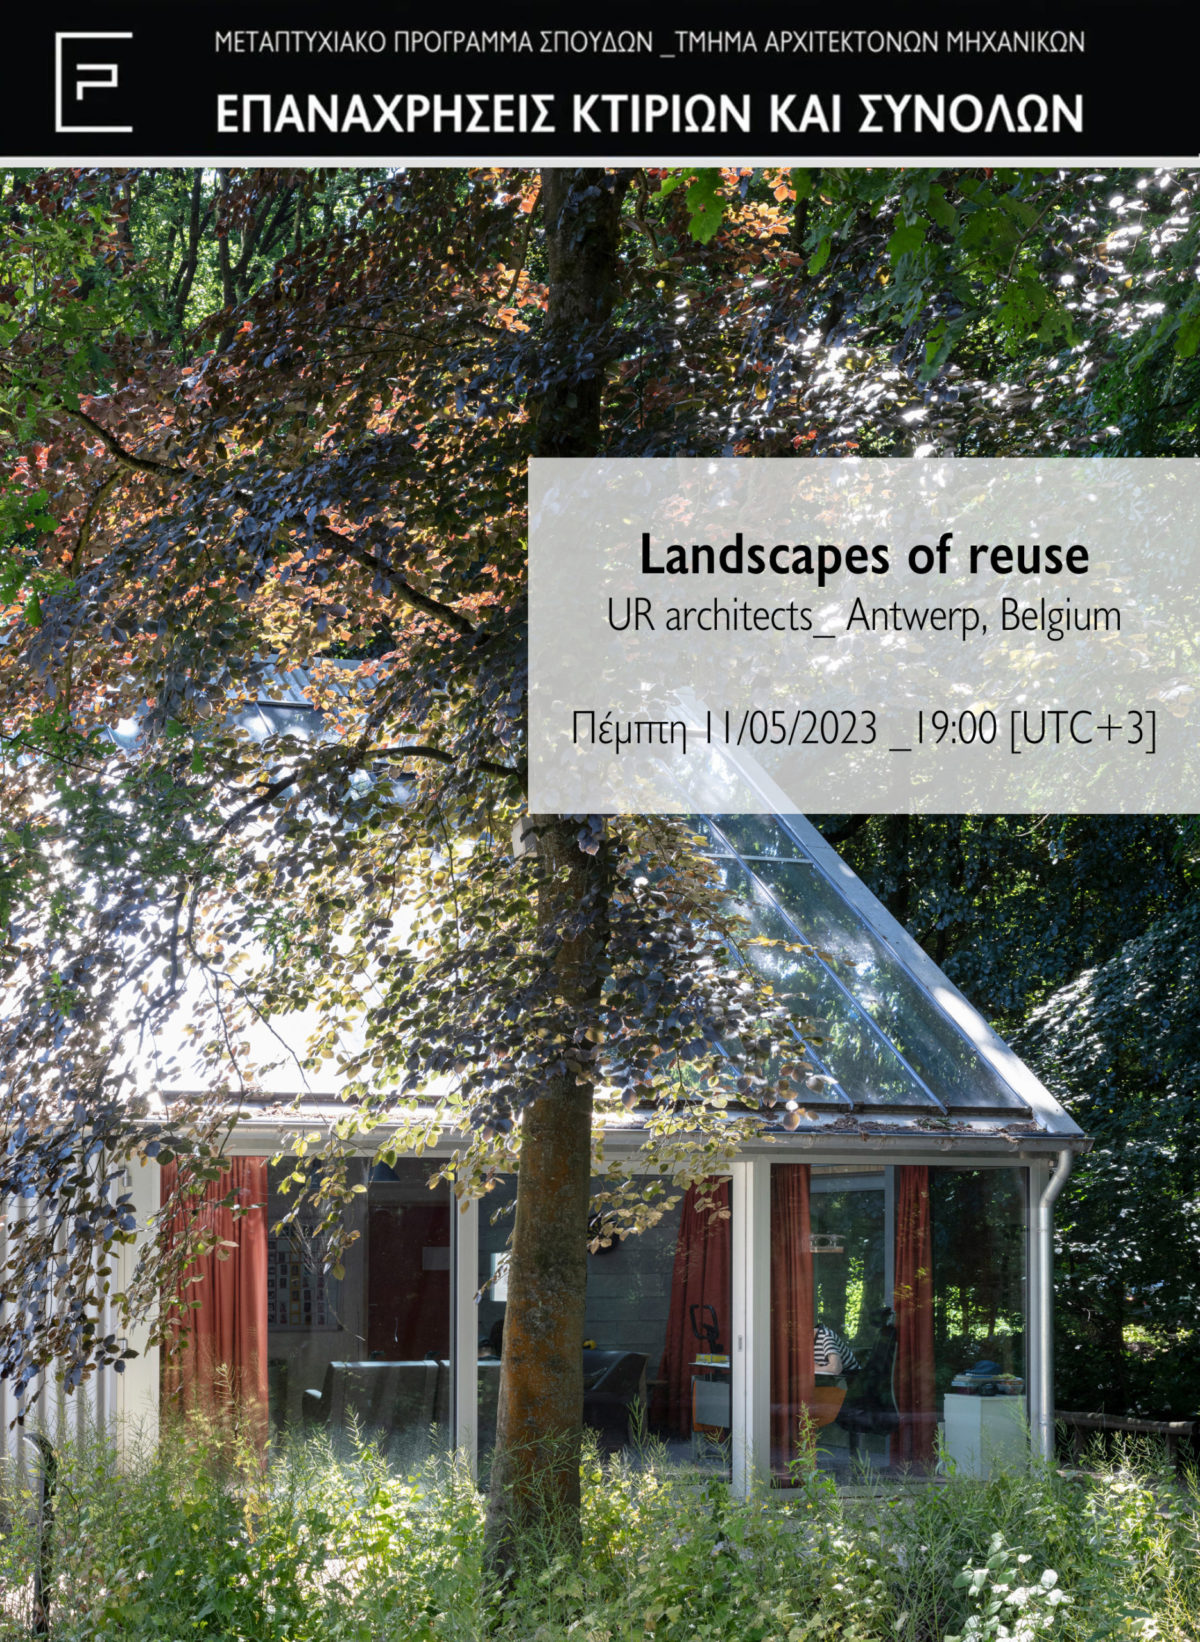 ΠΑΝΕΠΙΣΤΗΜΙΟ ΘΕΣΣΑΛΙΑΣ : Διαδικτυακή Διάλεξη με τίτλο “Landscapes of reuse”, Πέμπτη 11.5.2023 και ώρα 19:00